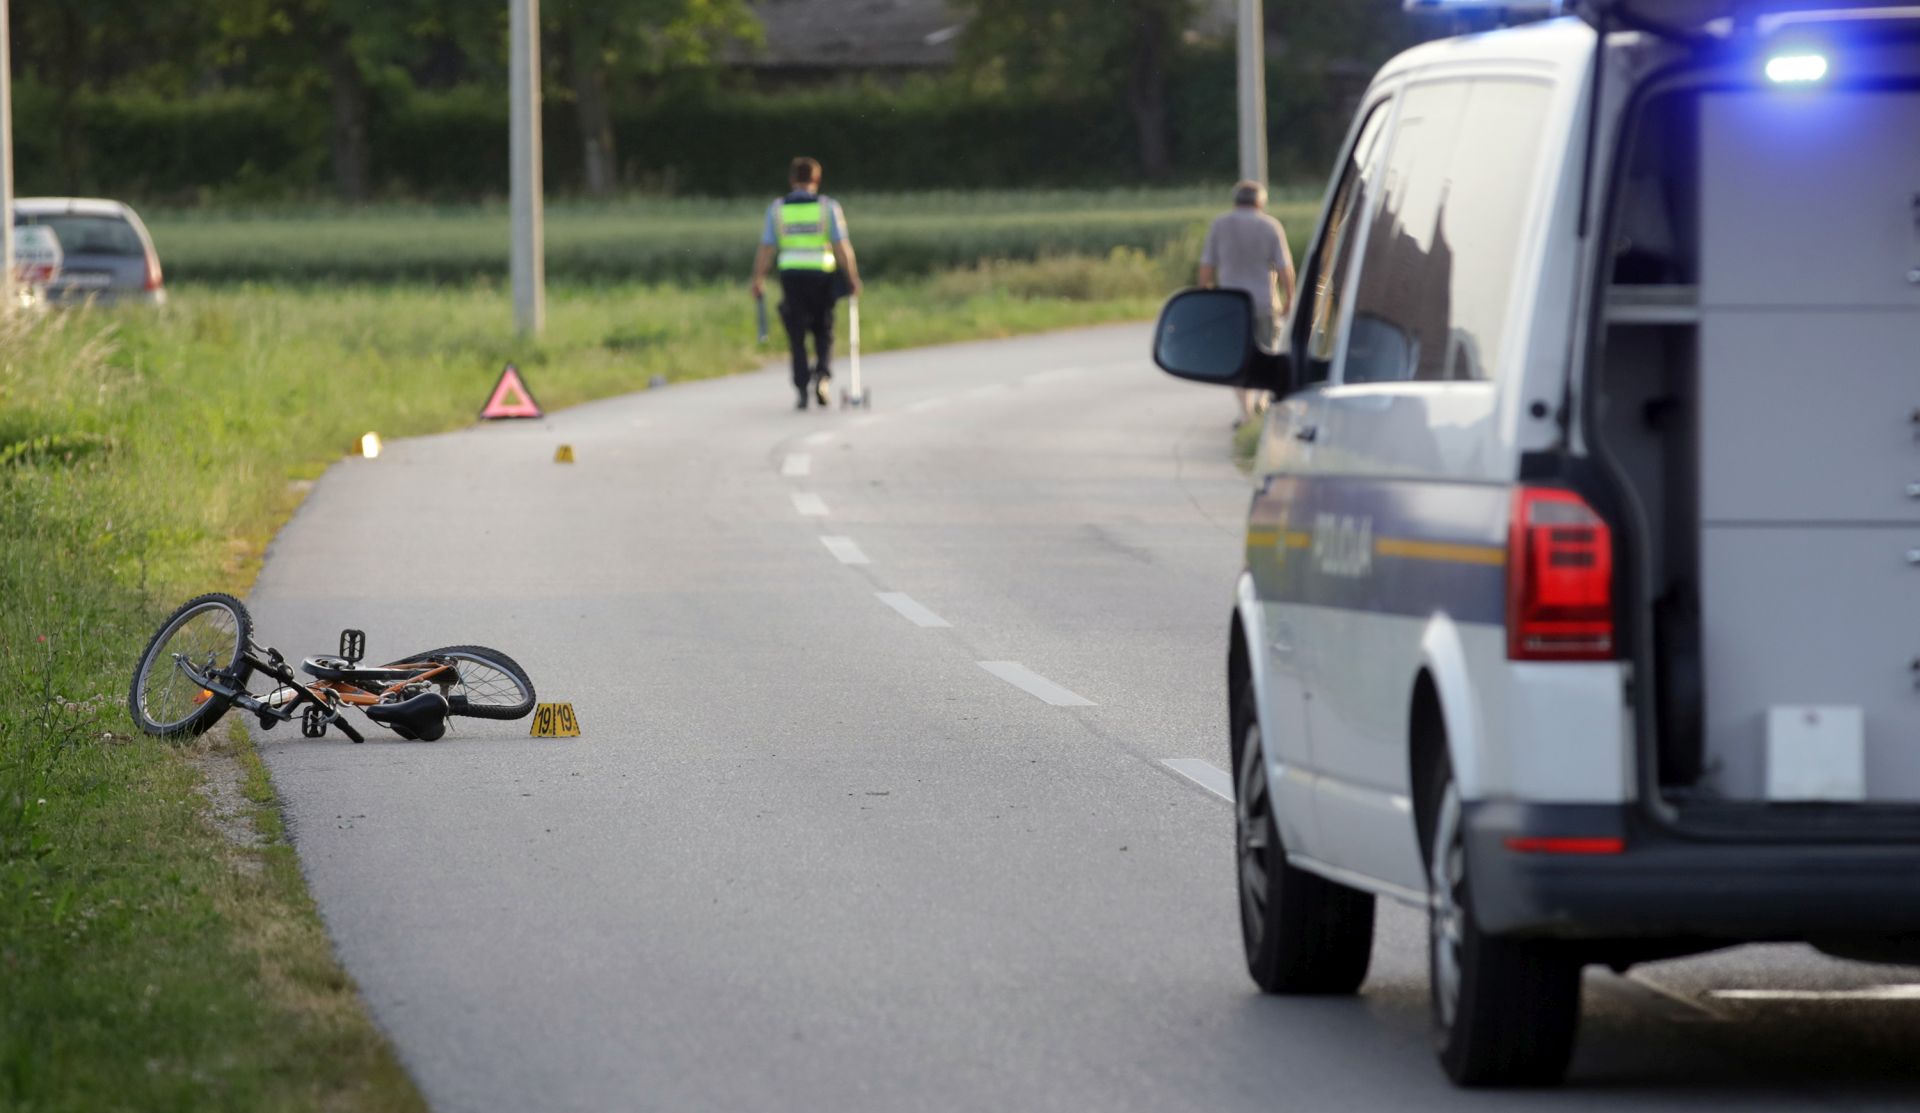 Koprivnica, 12.6.2019. - Osobni automobil naletio je na dvoje djece u Koprivničkom Ivancu u srijedu oko 18.50 sati, doznaje se u Policijskoj upravi koprivničko-križevačkoj. U tijeku je policijski očevid, a neslužbeno se doznaje da su dječaci bili na biciklima kada ih je udario vozač koji je pobjegao s mjesta nesreće. Zasad nije poznata težina ozljeda dječaka. Policija je u potrazi za vozačem, a očevici vjeruju da je bio pijan jer je krivudao po cesti. foto HINA/ ml